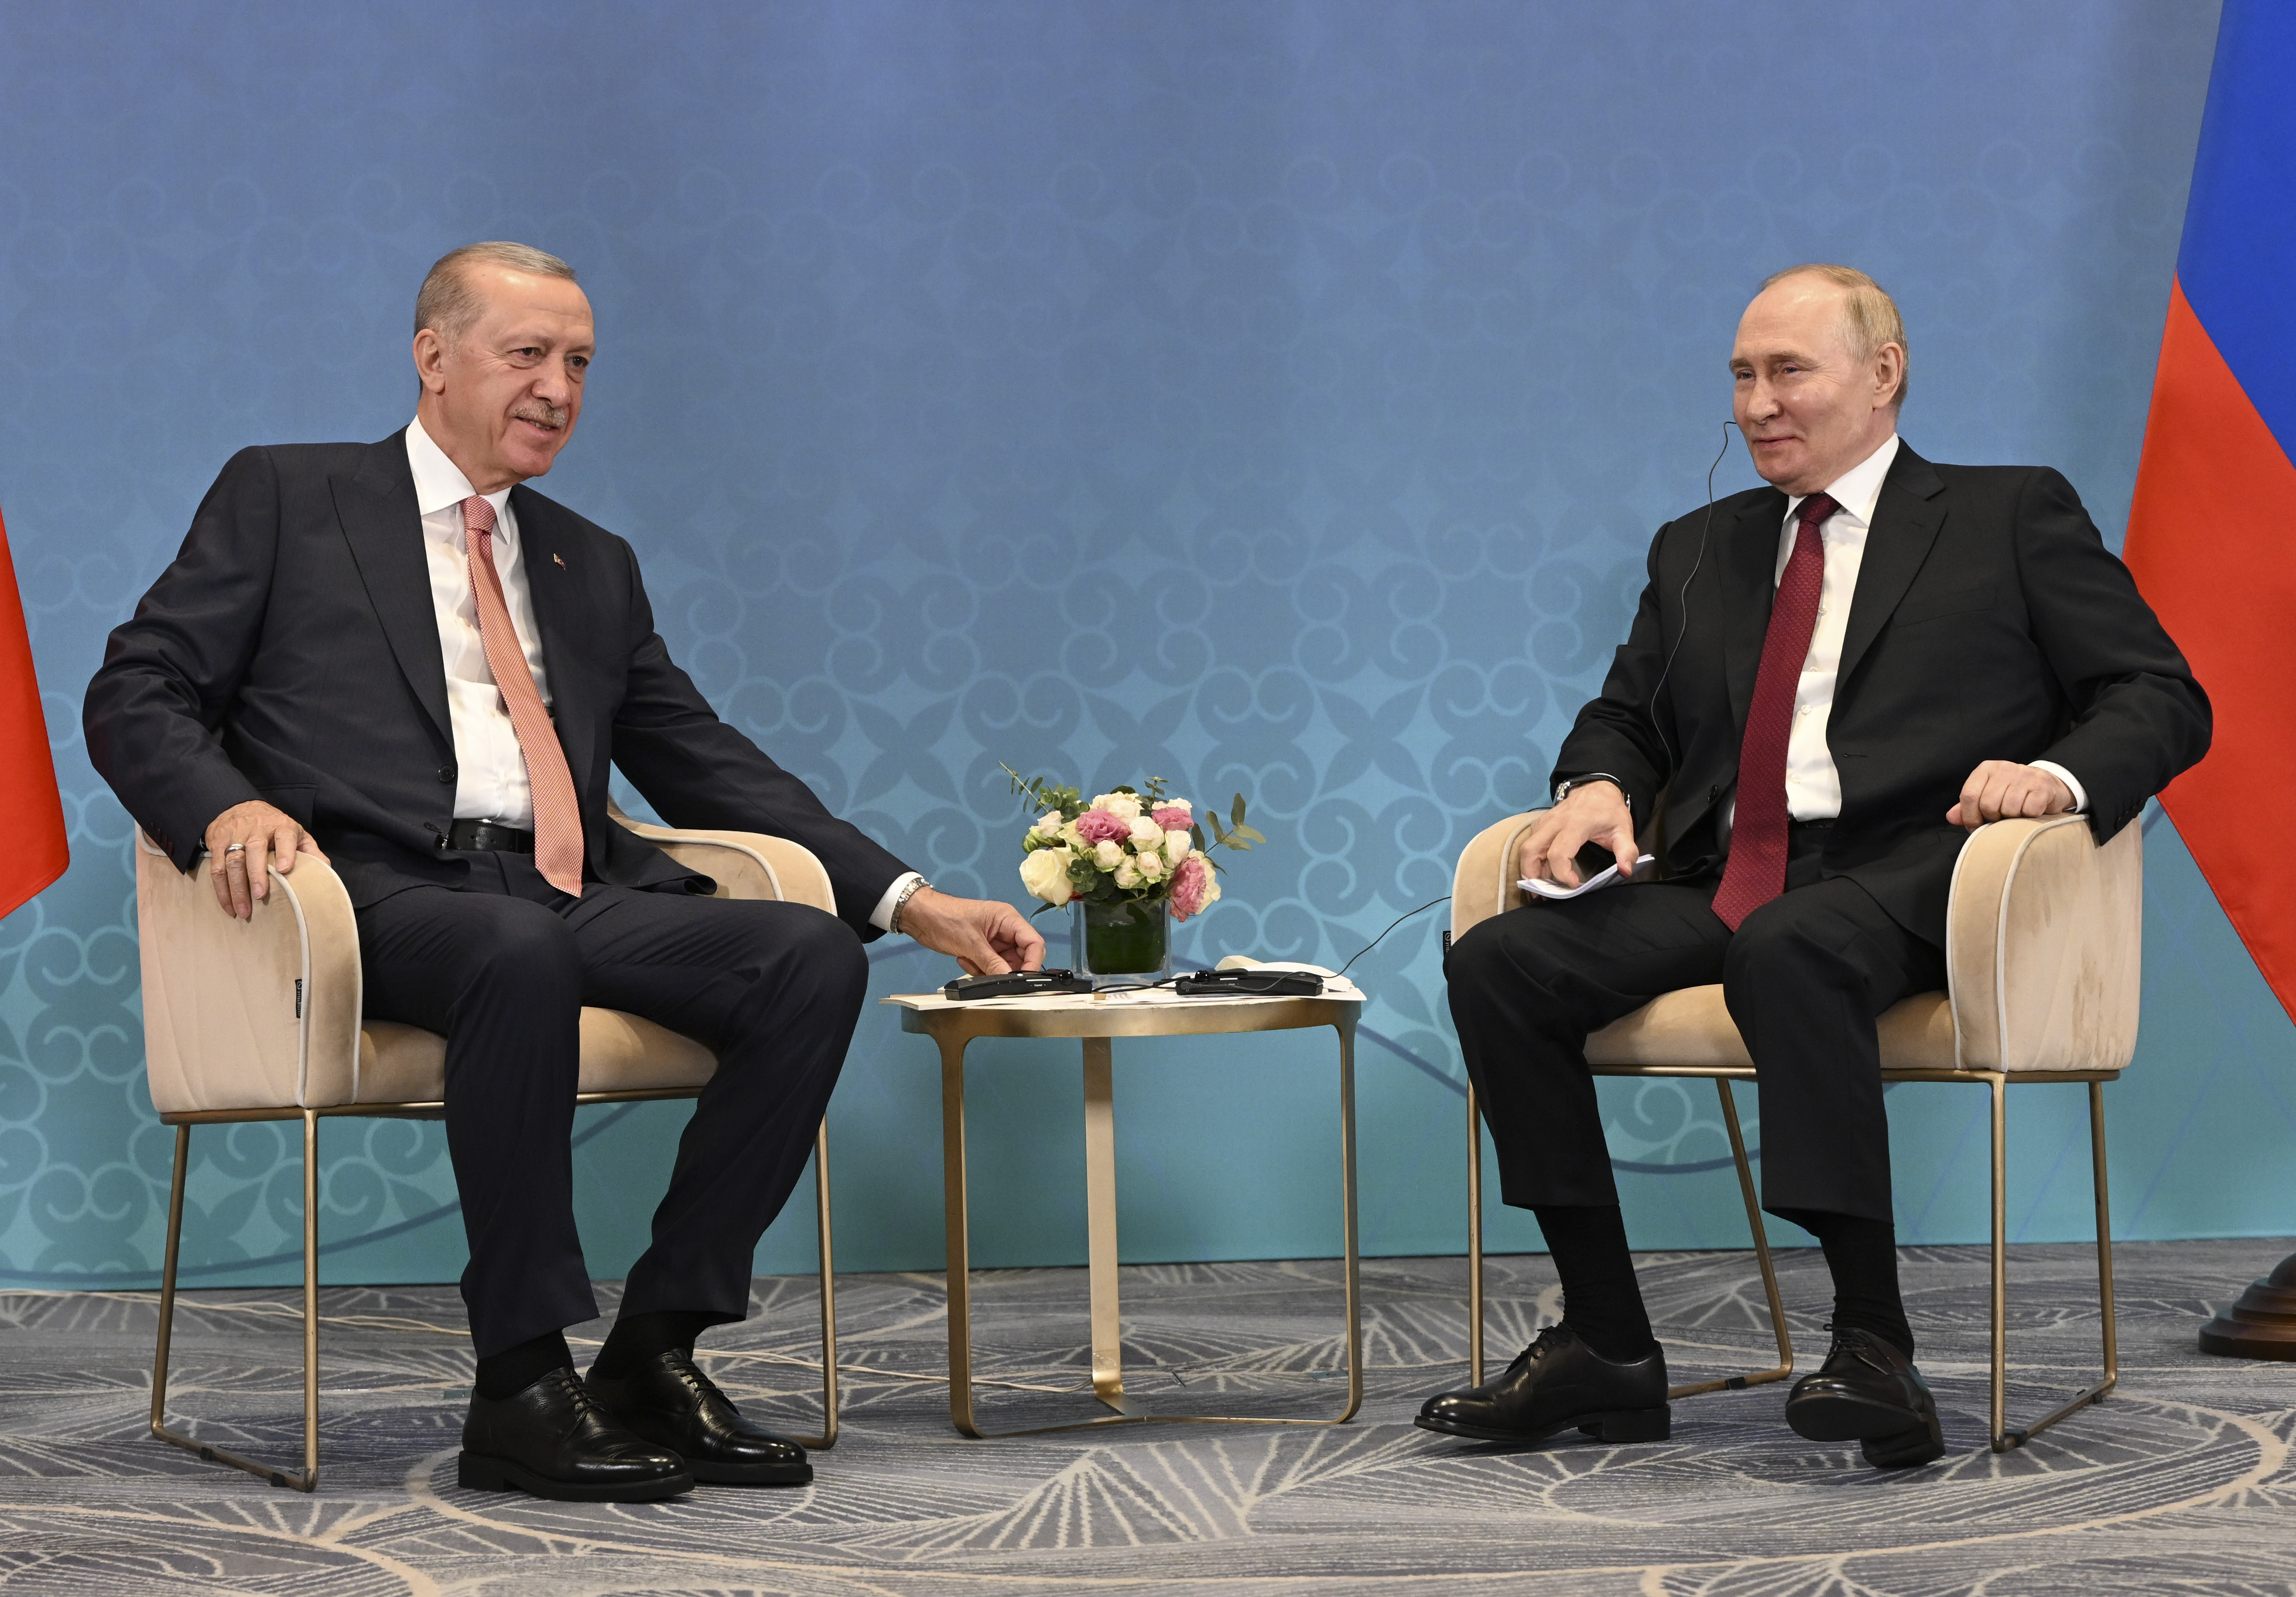 Merakla beklenen "Erdoğan-Putin" görüşmesi sona erdi: İşte konuşulanlar